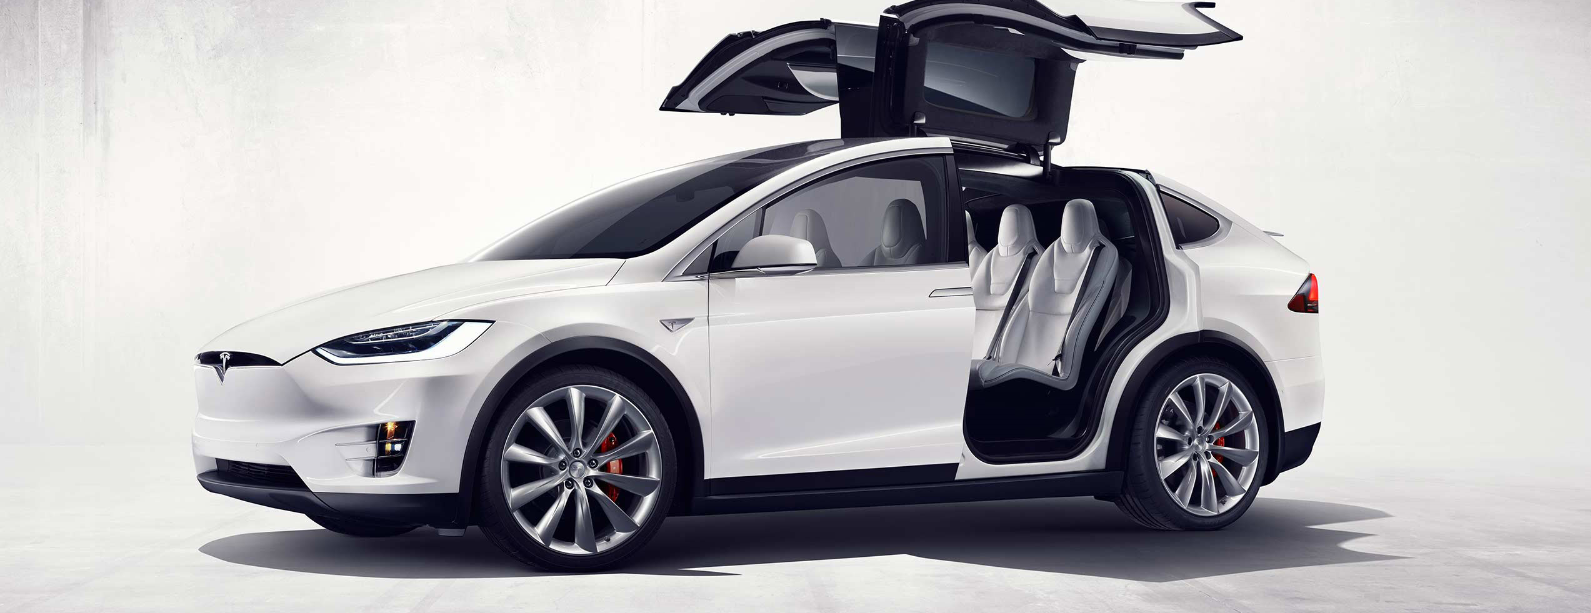 2017-Model X-Tesla-cincinnati-luxury-suvs